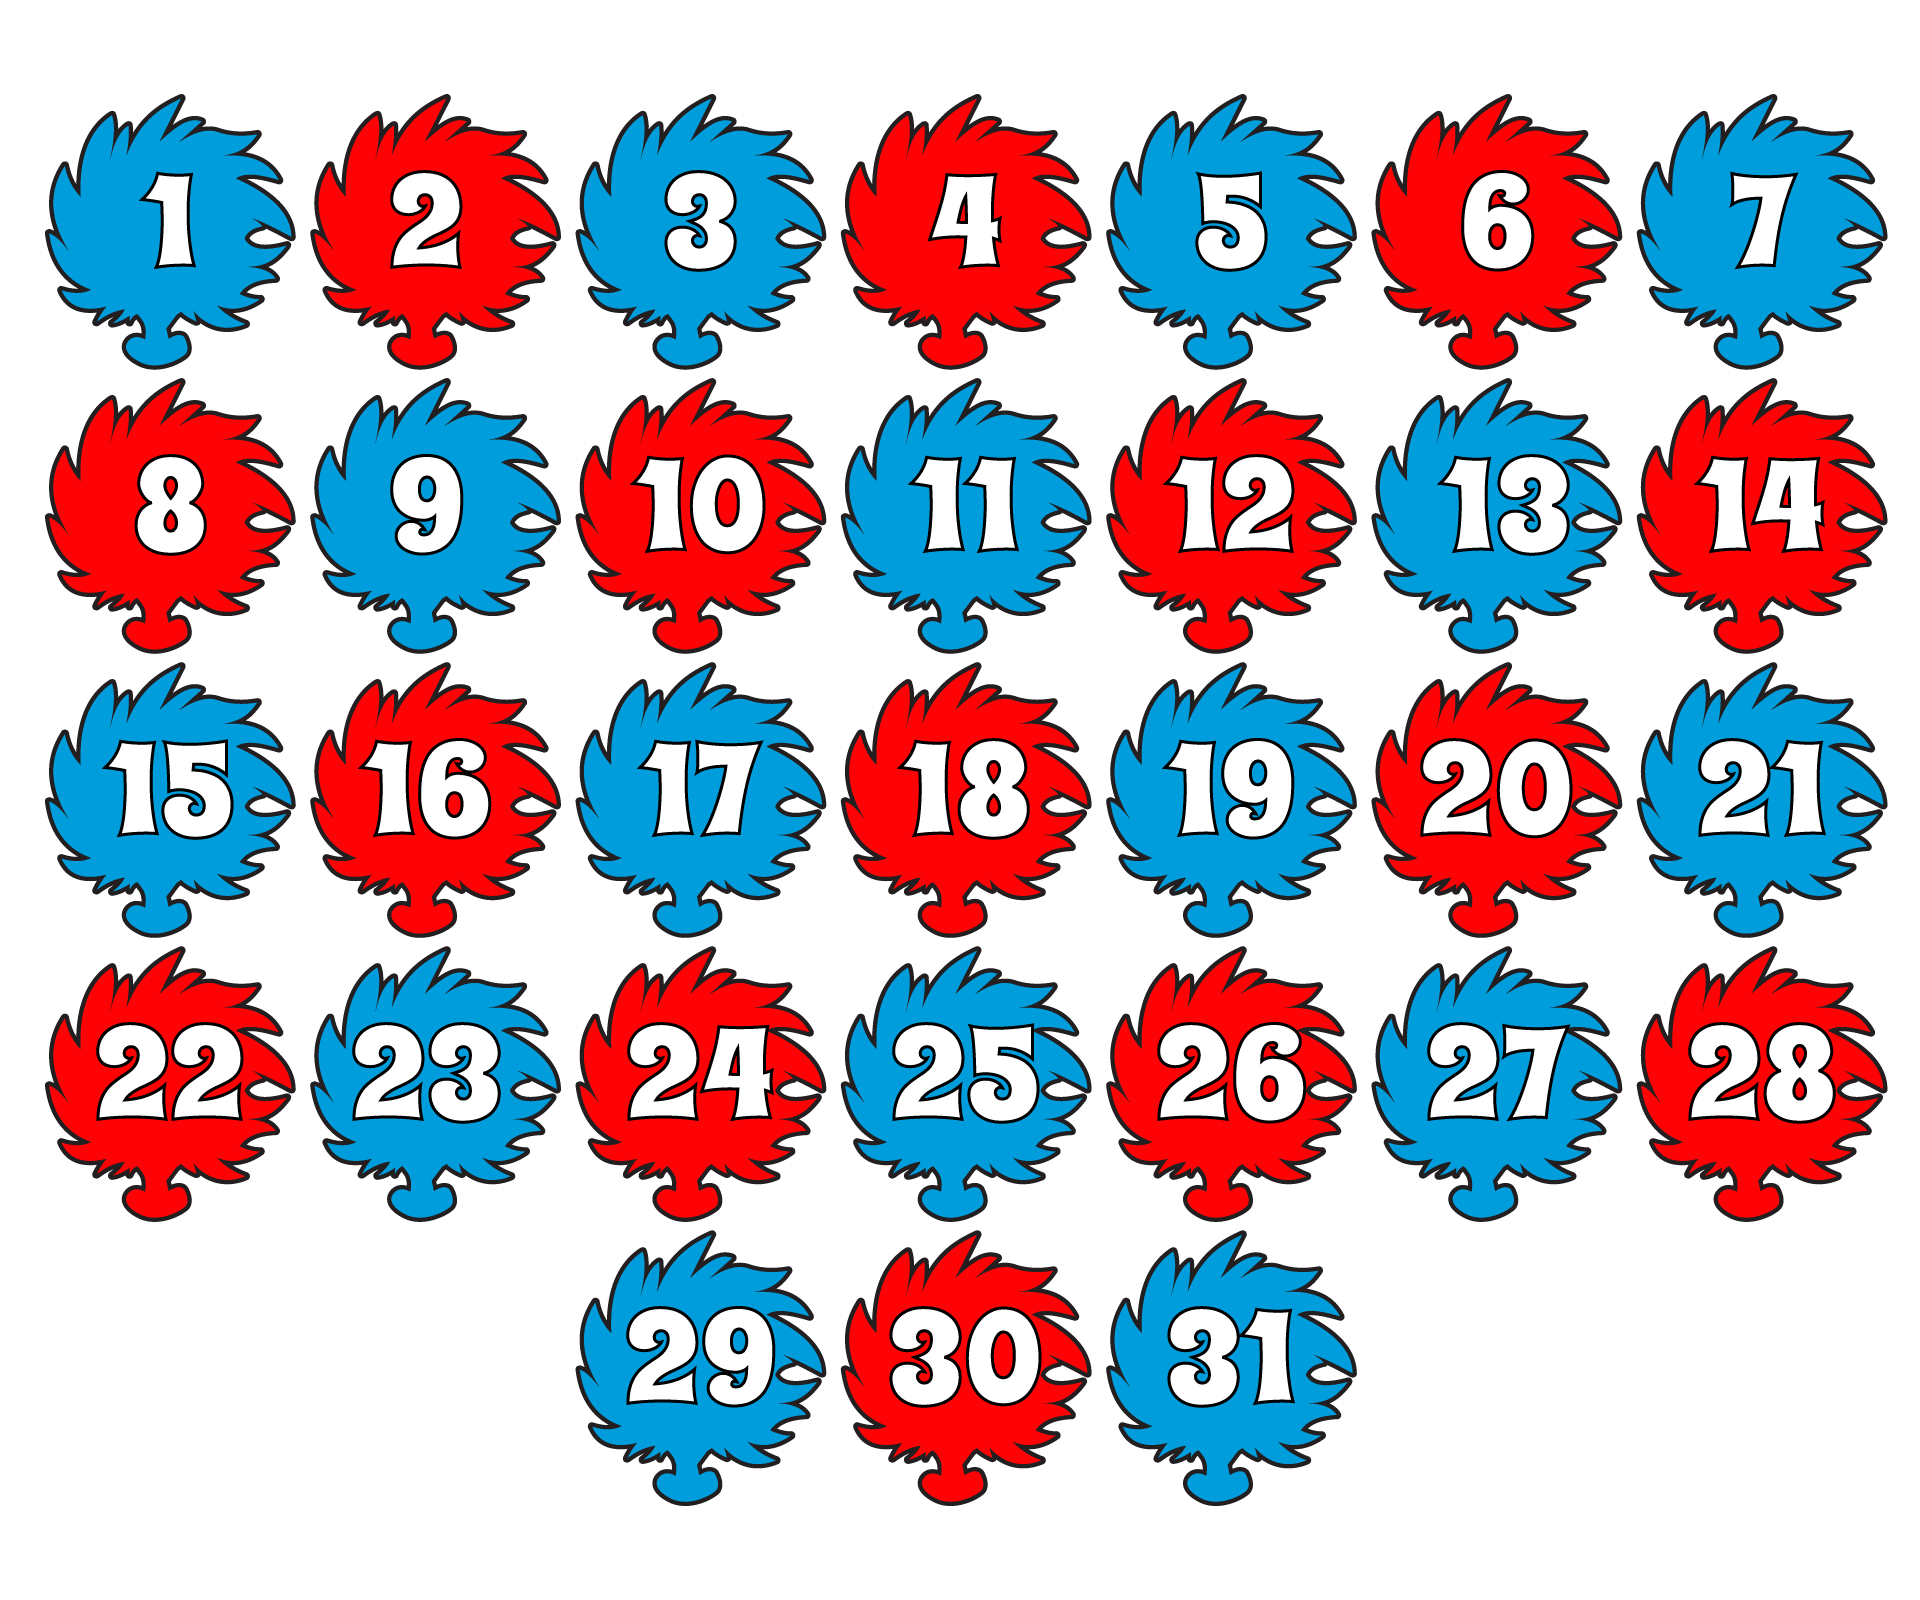 Dr. Seuss Feelings Calendar Numbers